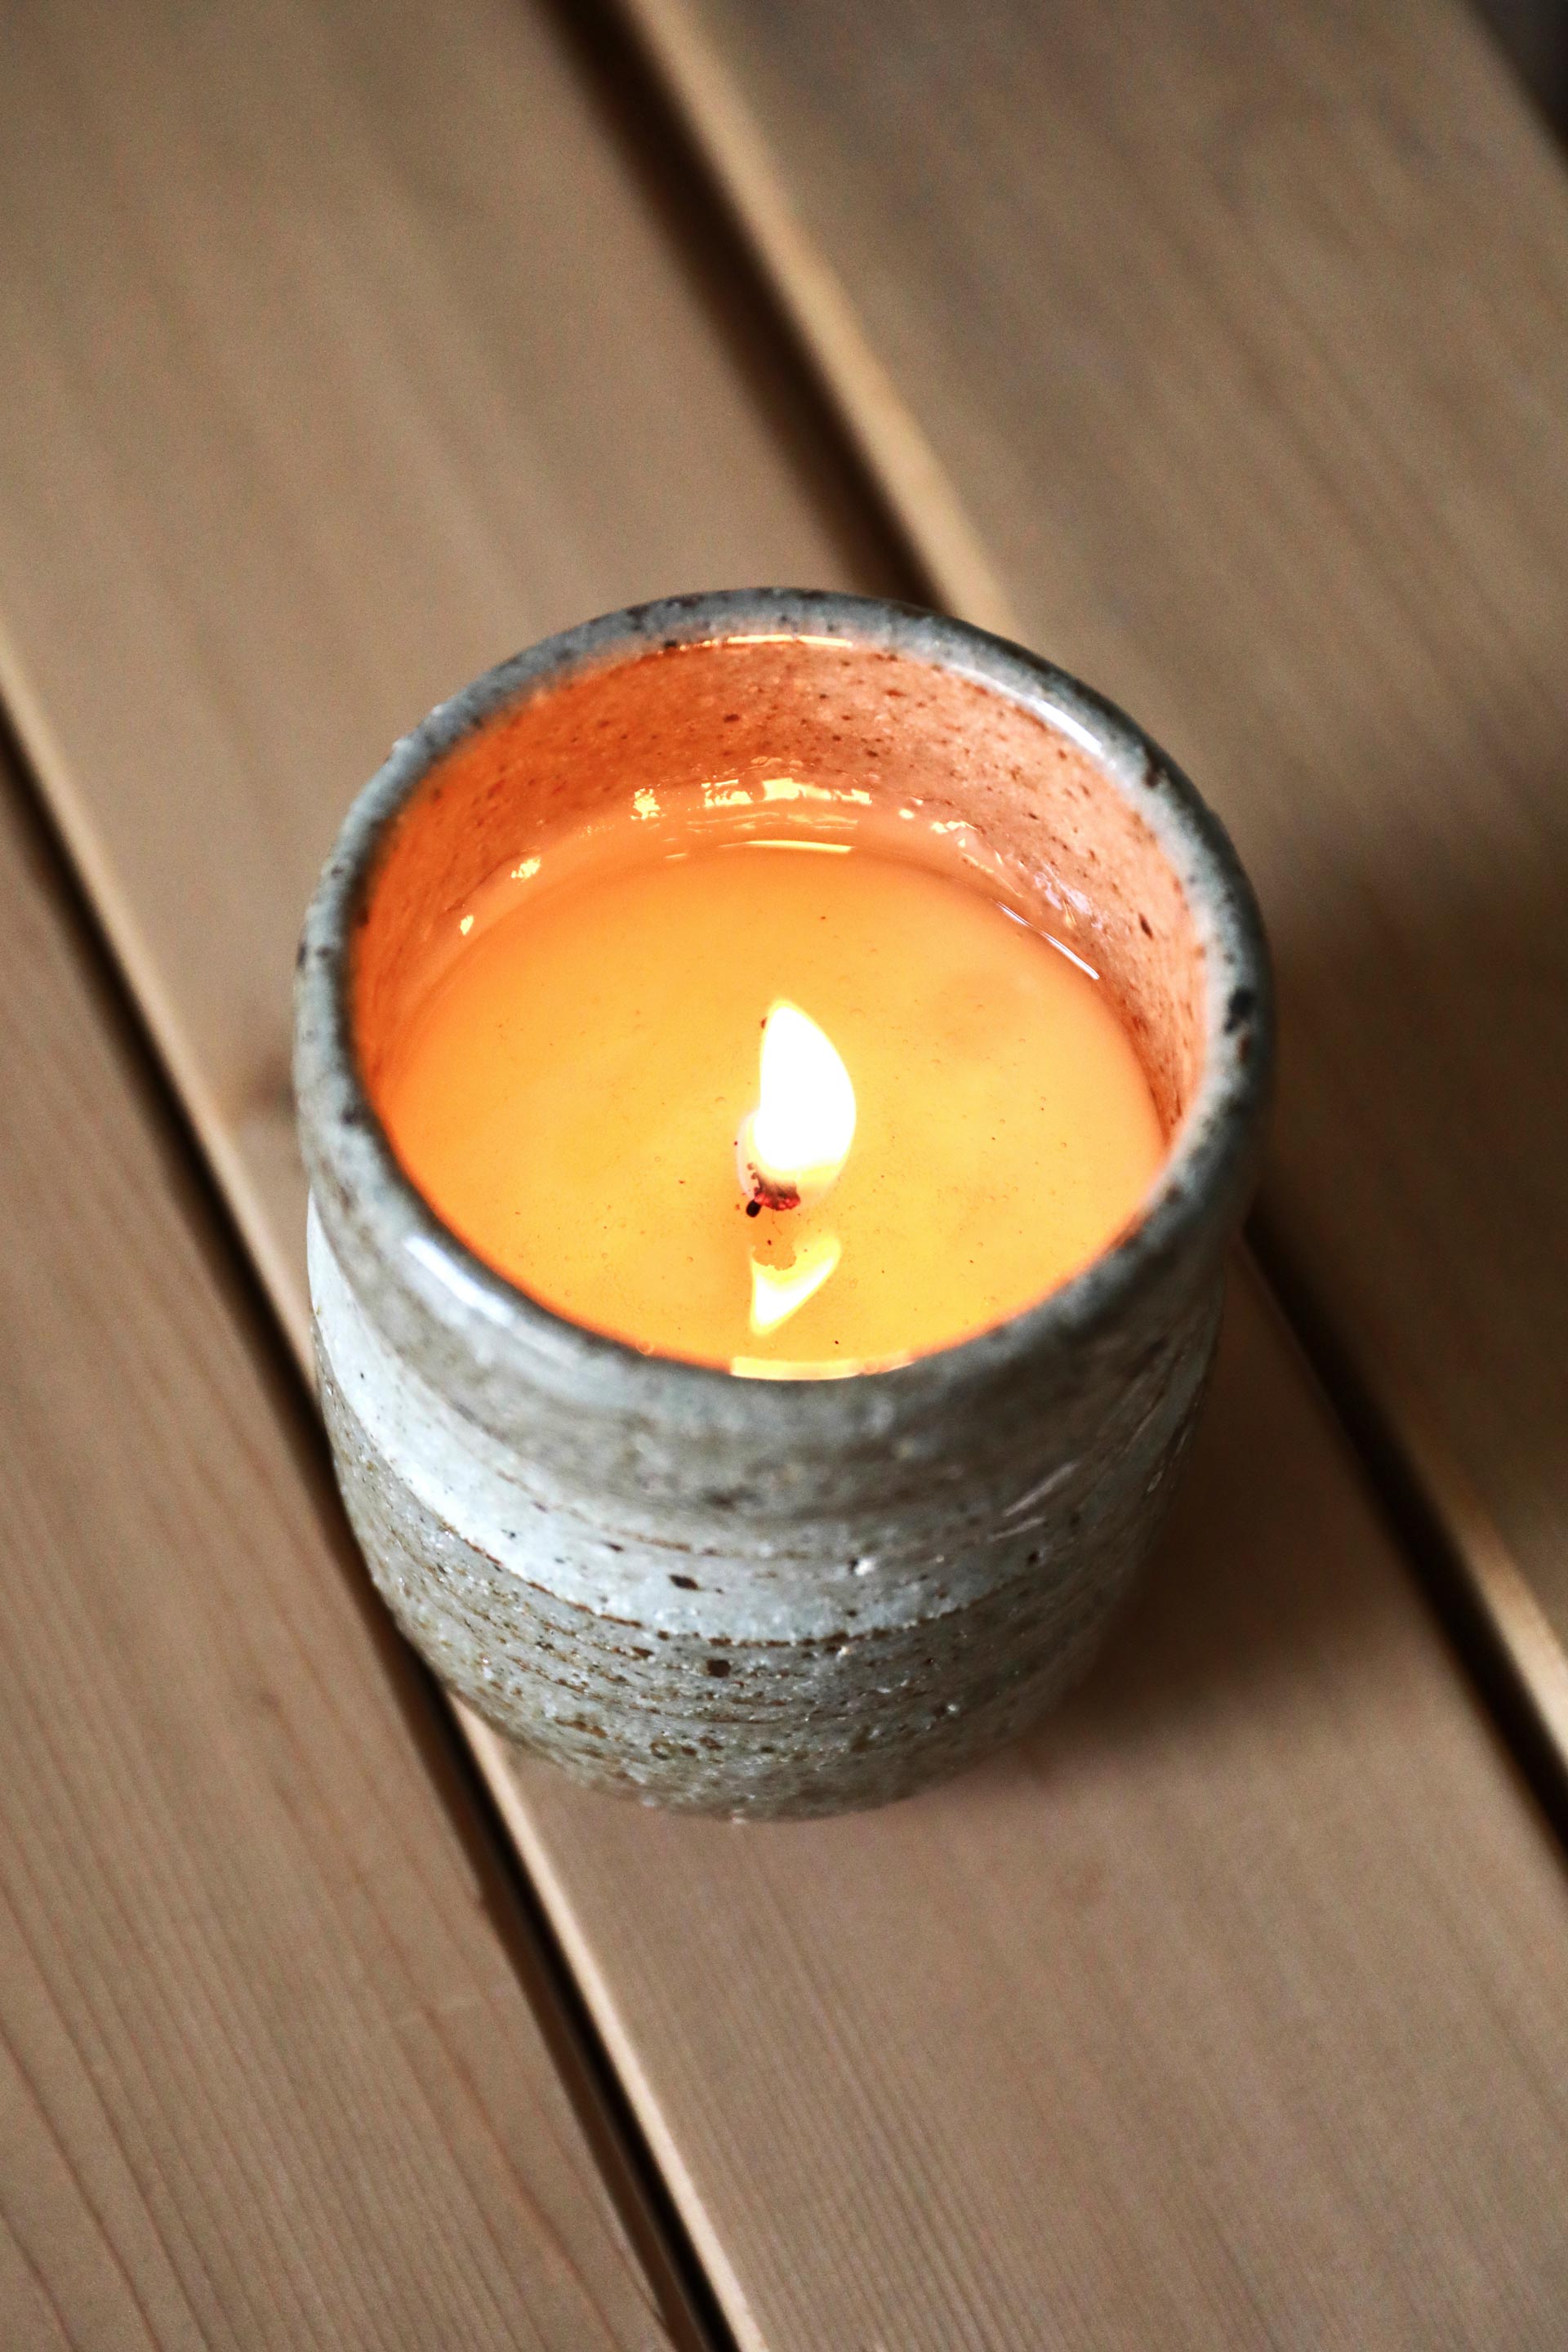 Omishima Beeswax Candle Making - SHIMANANMI OMISHIMA WAKKA